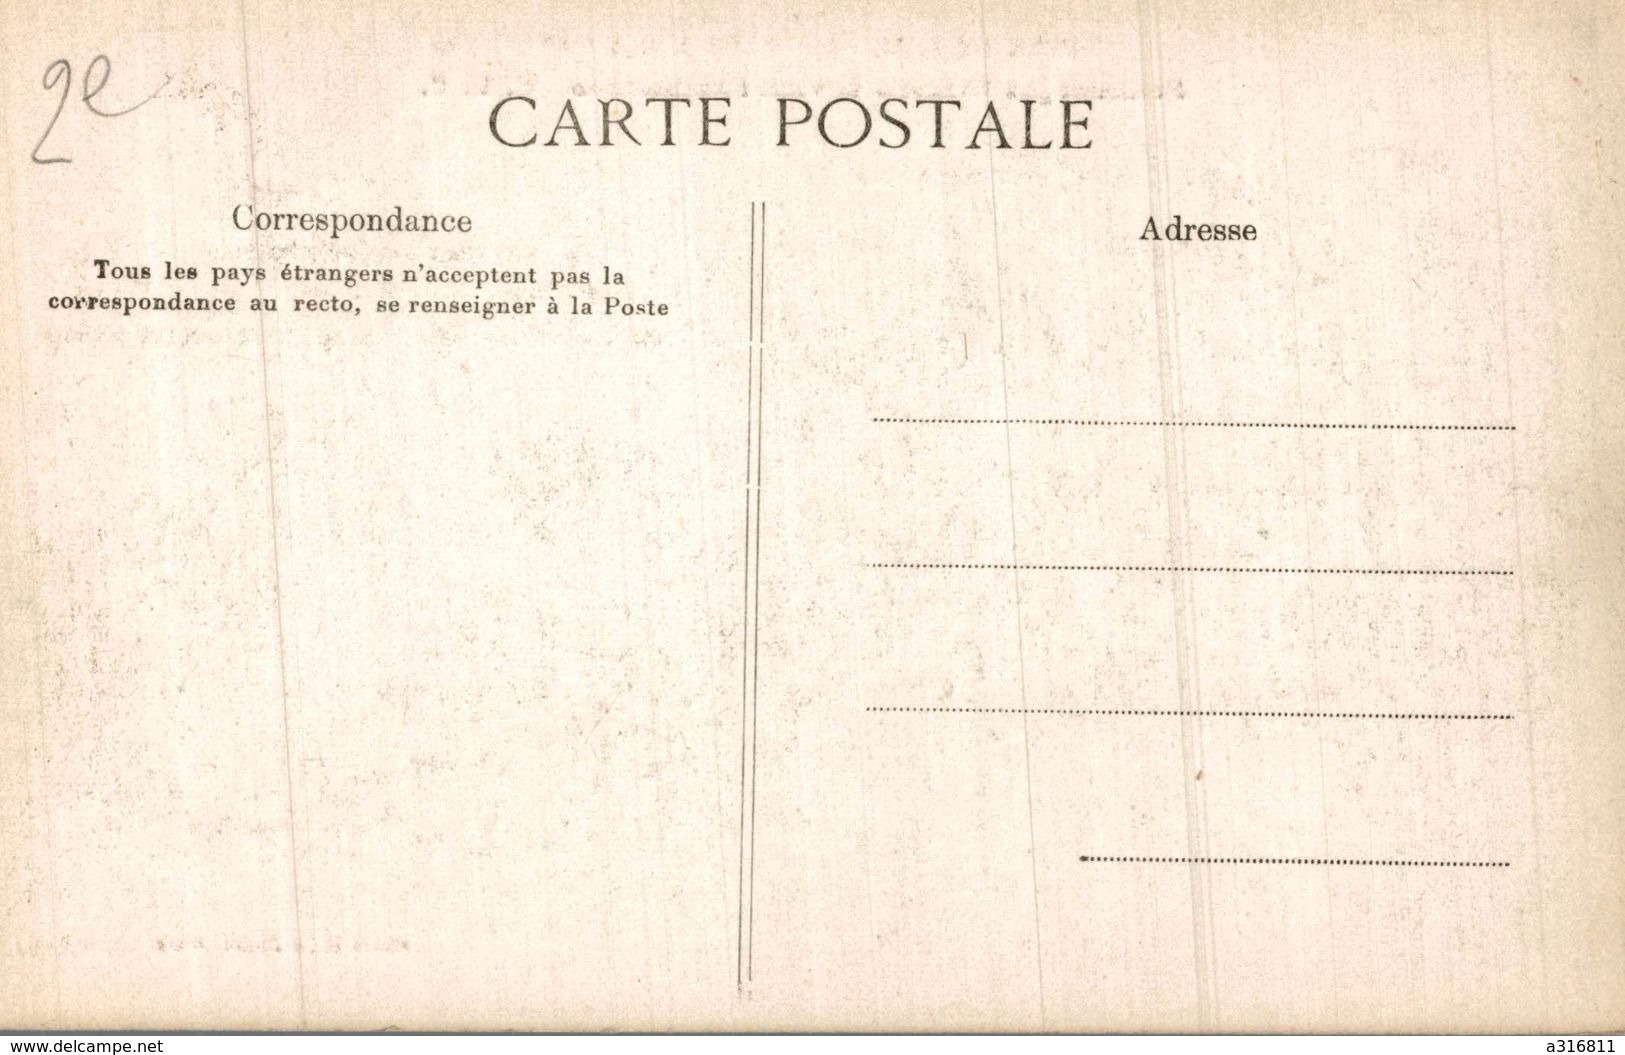 VISITE DE S. M ALPHONSE XIII A PARIS - Receptions